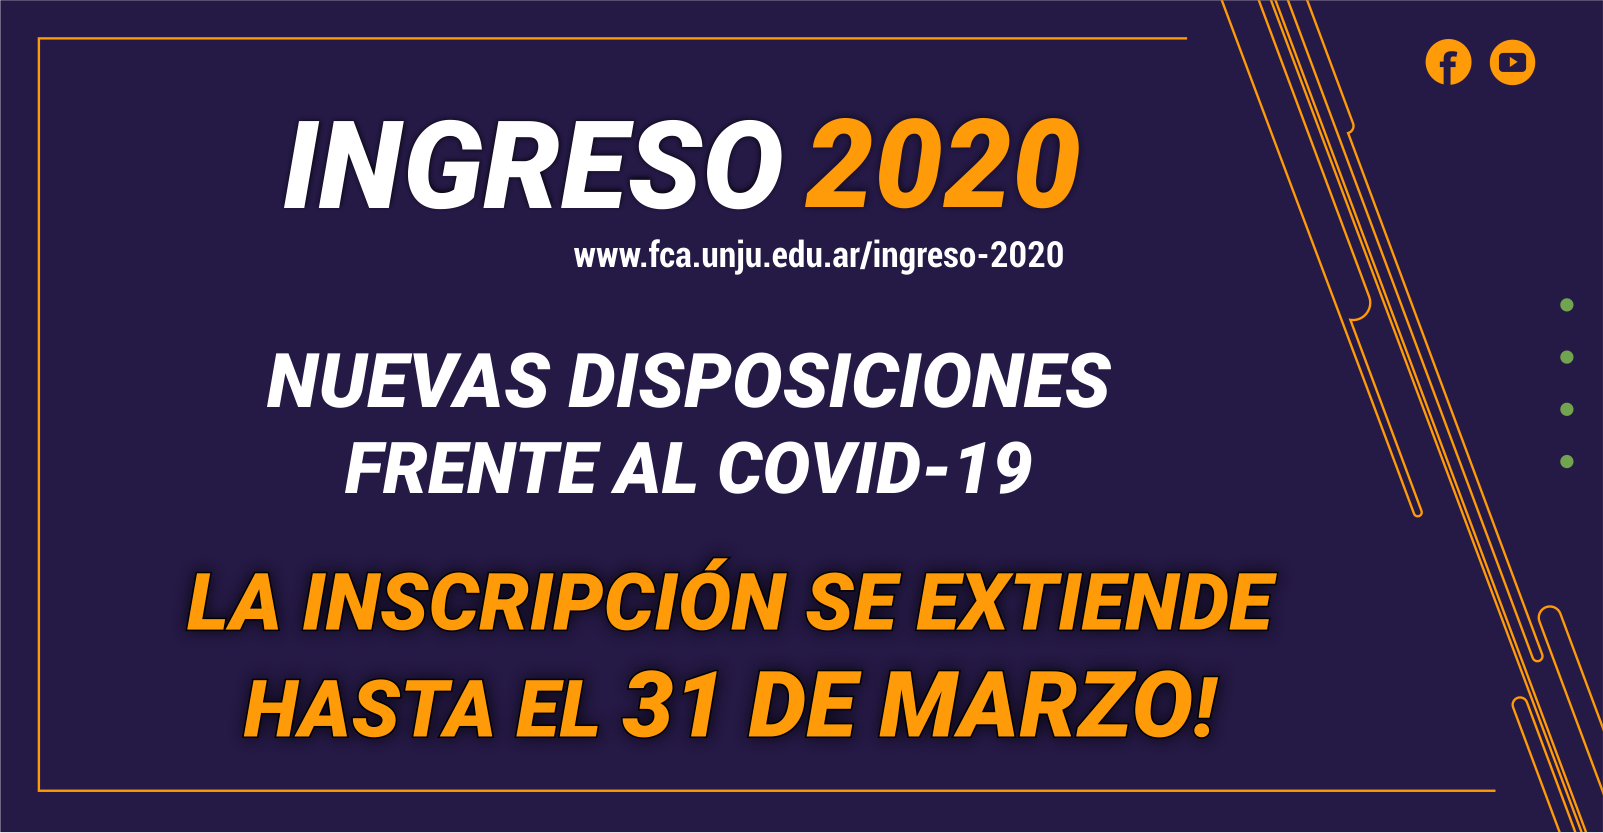 INGRESO 2020 | INFORMACIÓN IMPORTANTE: DISPOSICIONES FRENTE AL COVID-19